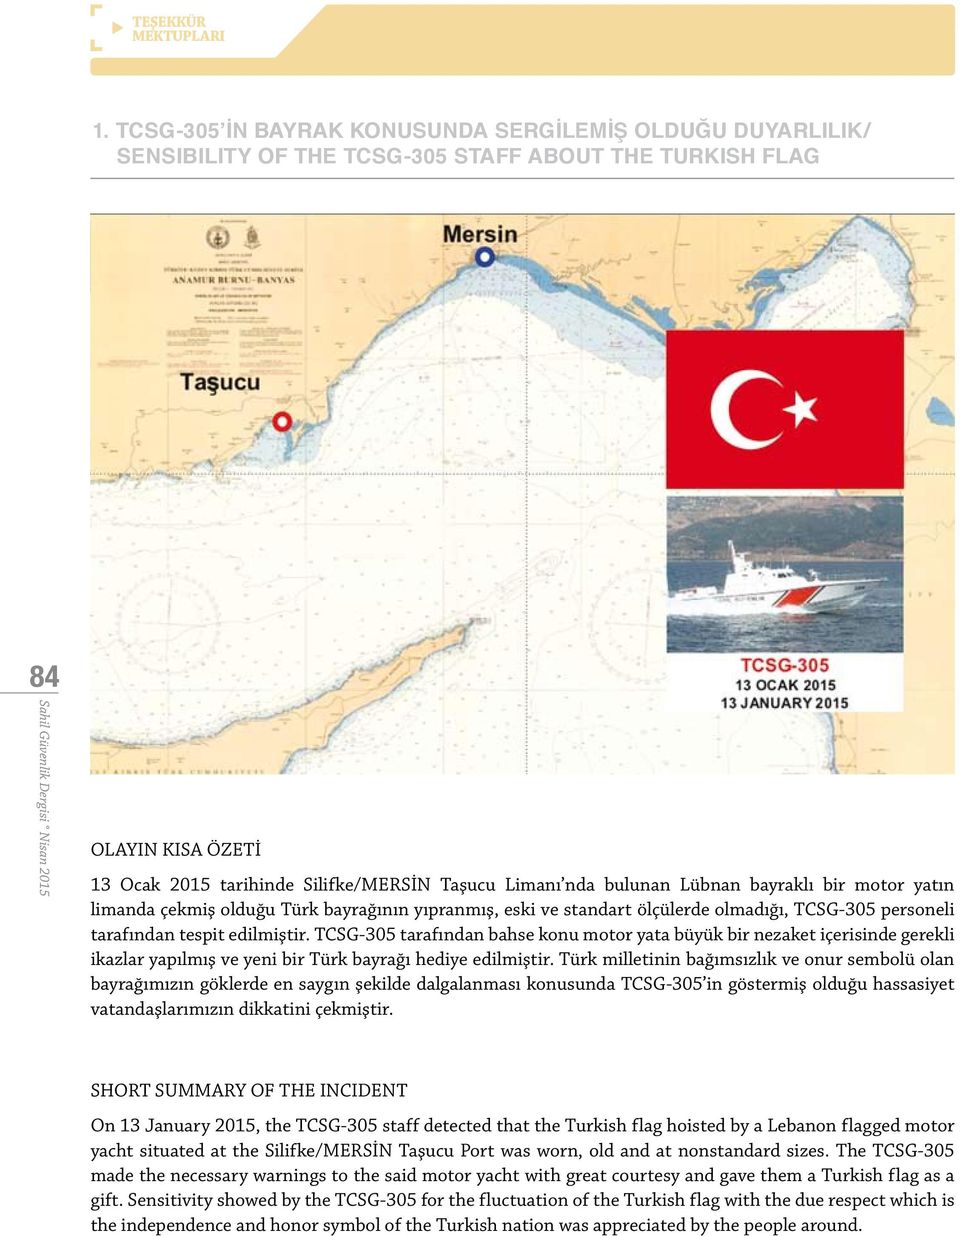 bulunan Lübnan bayraklı bir motor yatın limanda çekmiş olduğu Türk bayrağının yıpranmış, eski ve standart ölçülerde olmadığı, TCSG-305 personeli tarafından tespit edilmiştir.